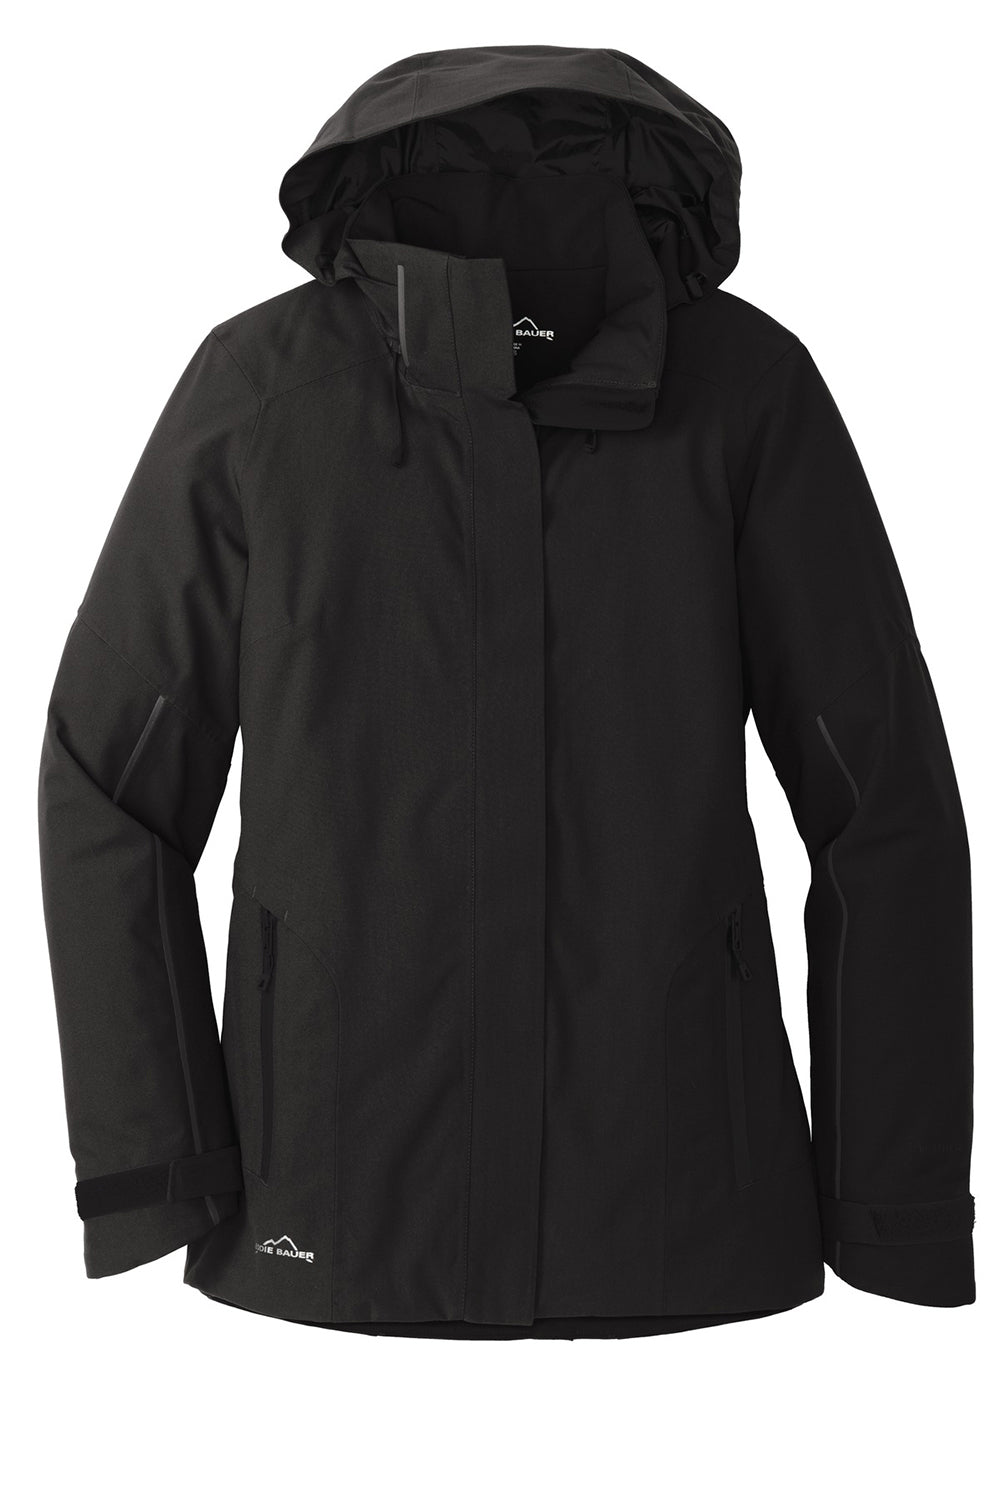 Eddie Bauer EB555 Womens WeatherEdge Plus Waterproof Full Zip Hooded Jacket Black Flat Front